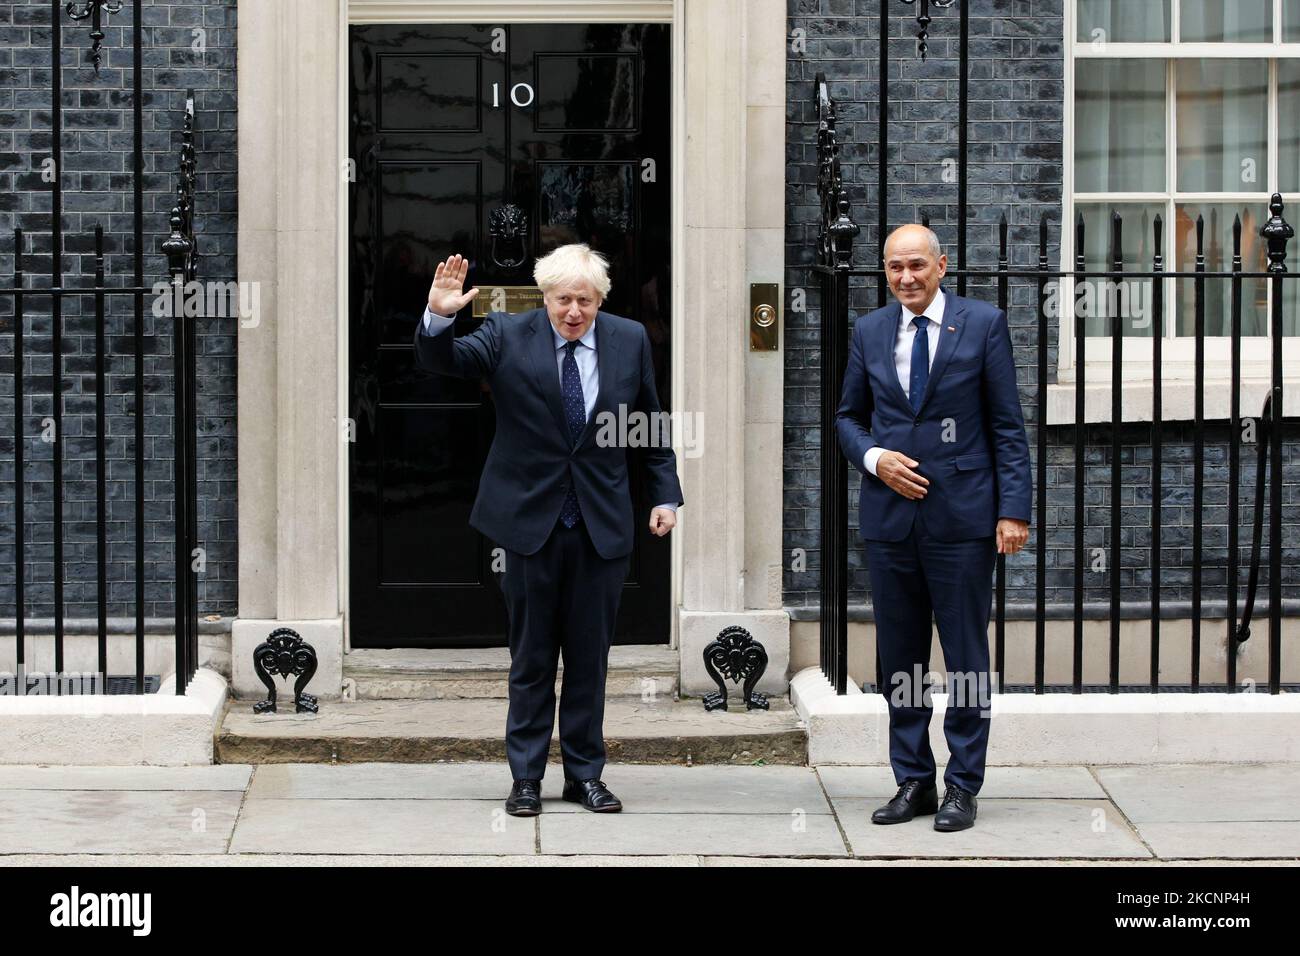 Der britische Premierminister Boris Johnson (L) begrüßt den slowenischen Premierminister Janez Jansa (R) am 30. September 2021 vor der Downing Street 10 in London, England. (Foto von David Cliff/NurPhoto) Stockfoto